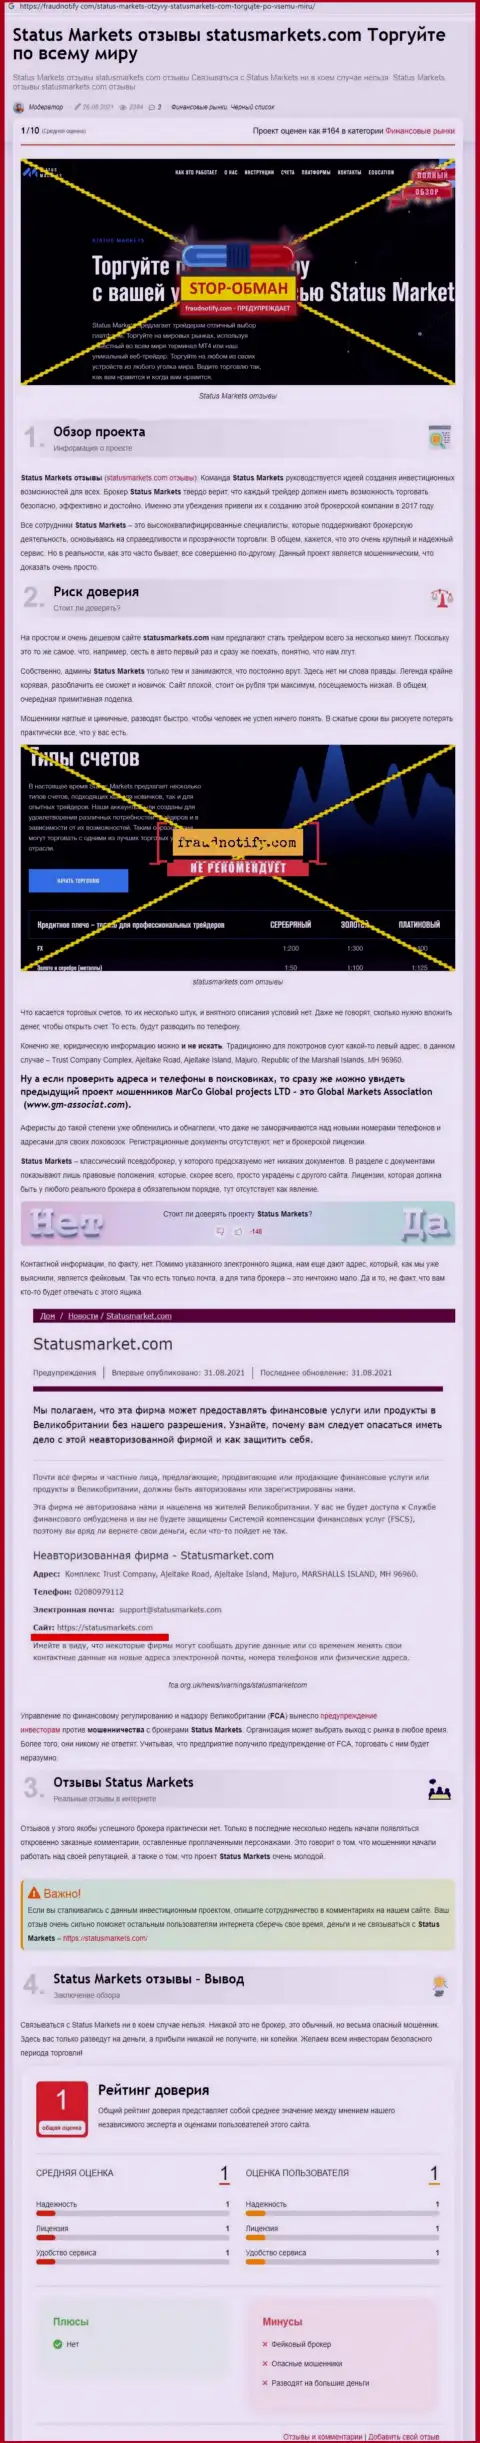 В конторе StatusMarkets обманывают - доказательства противозаконных комбинаций (обзор махинаций компании)